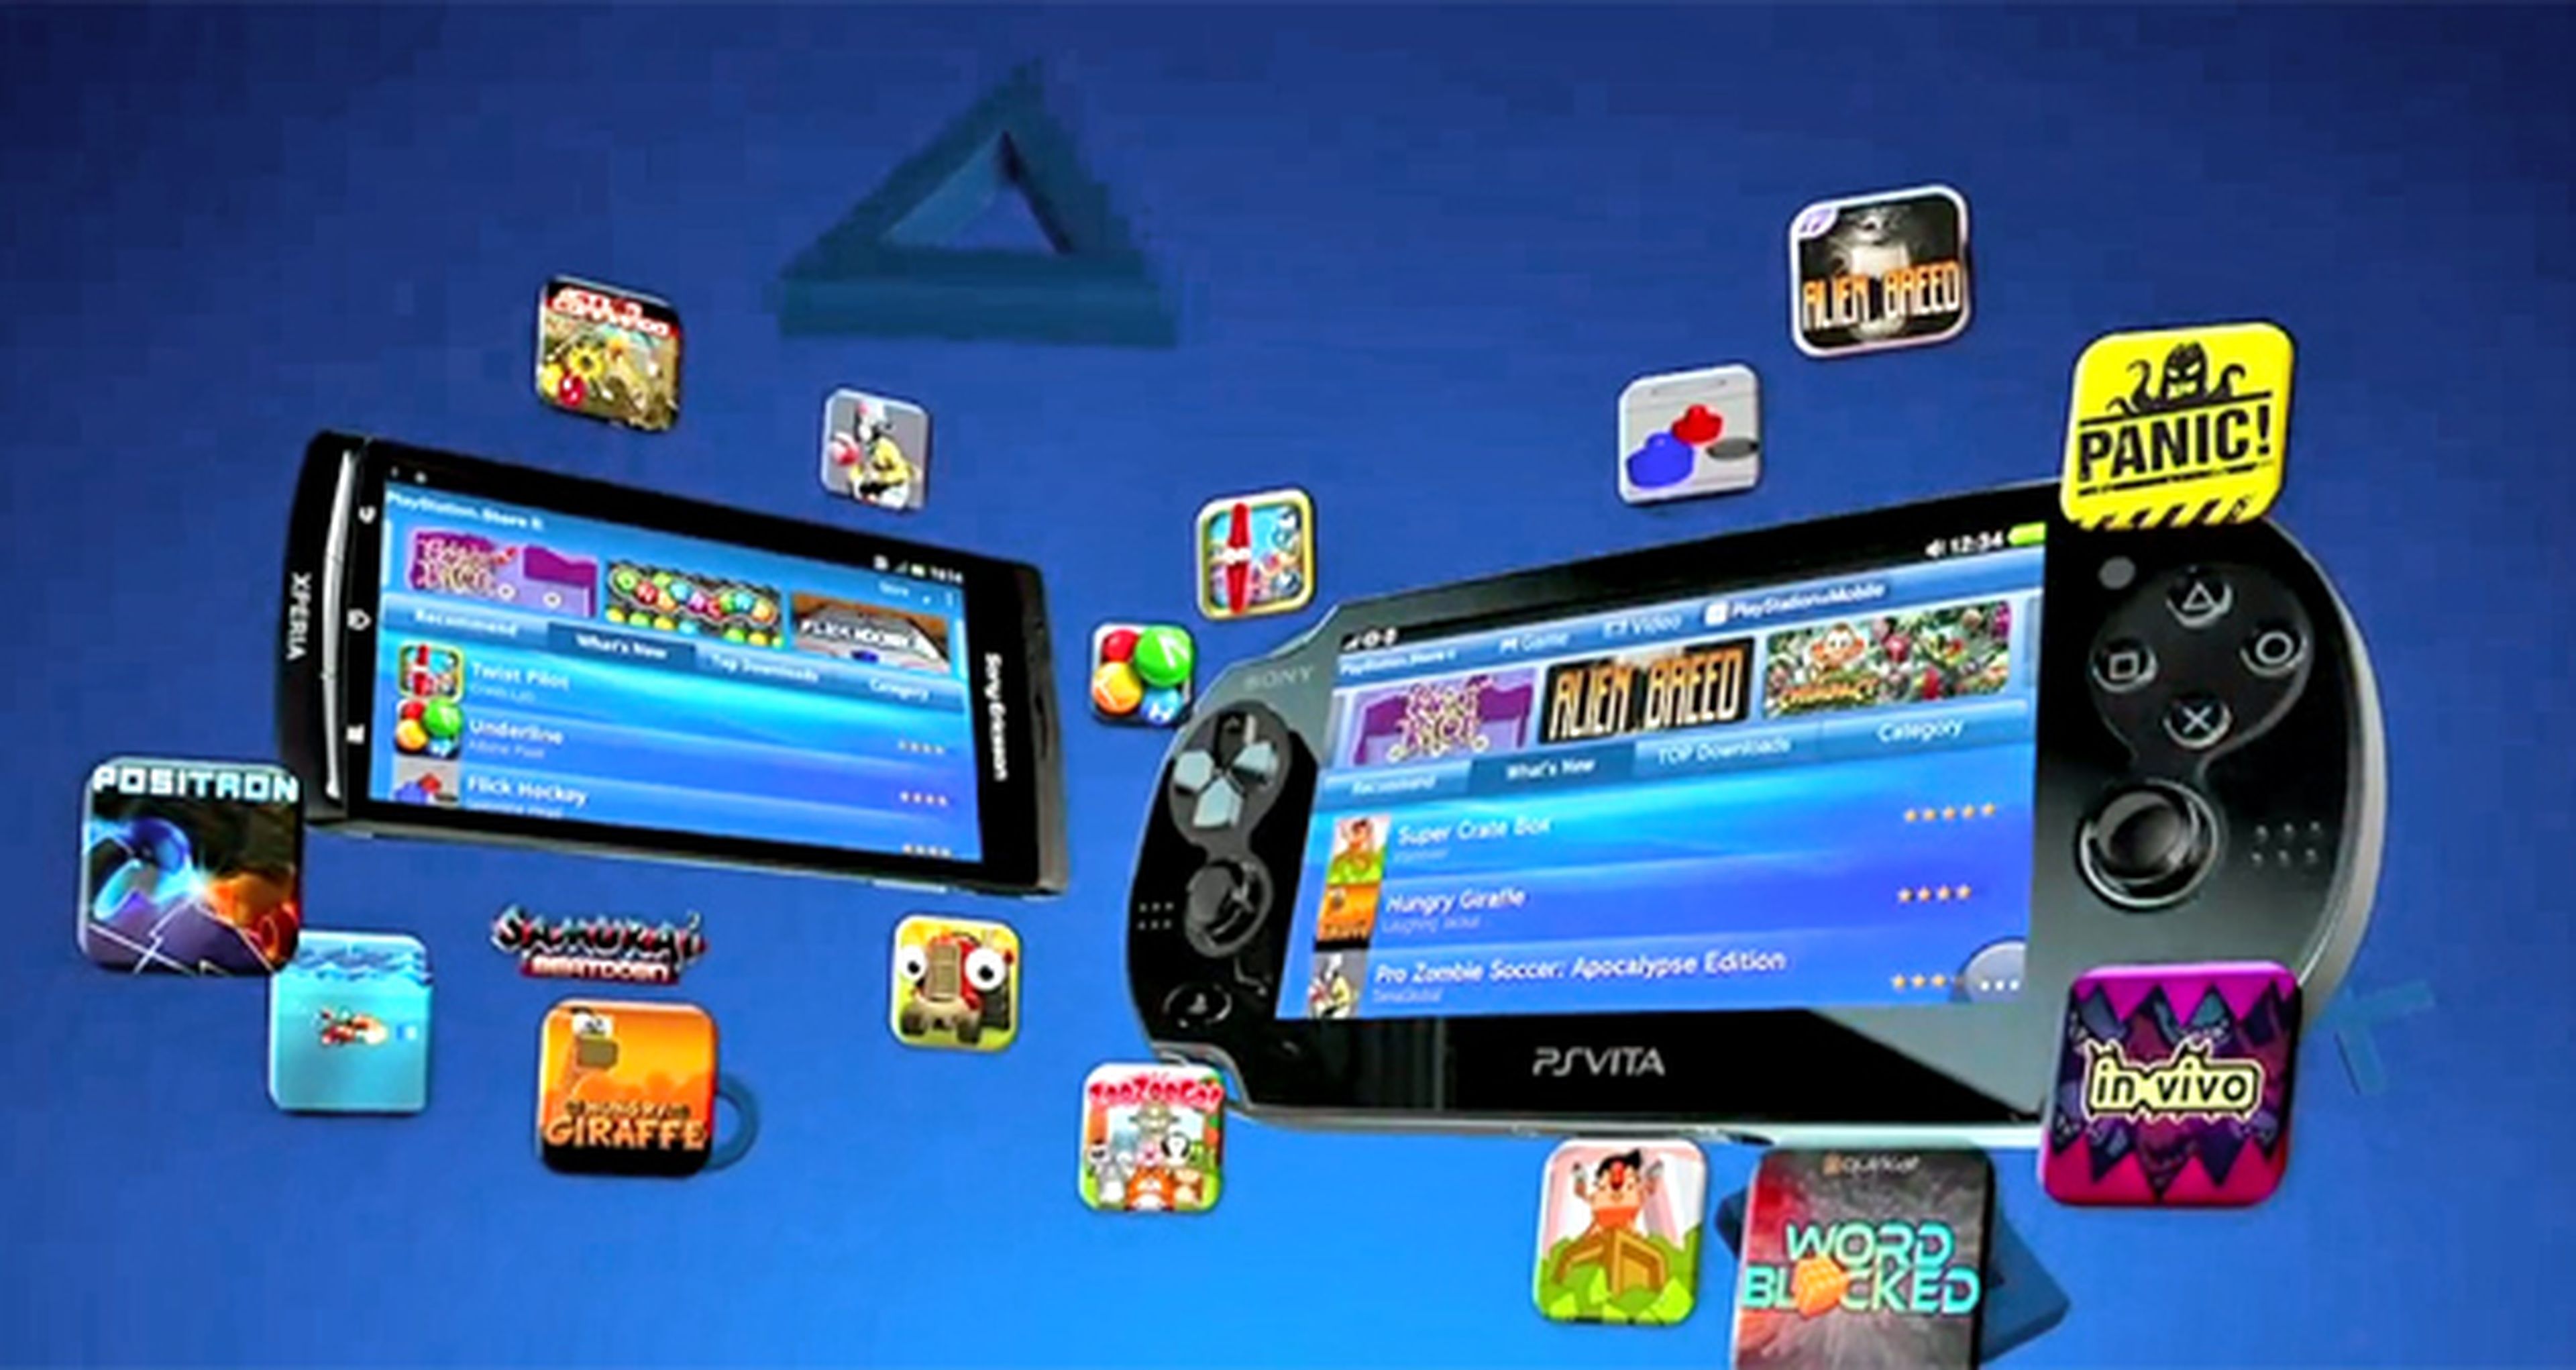 6 juegos de PSP que puedes jugar en Android